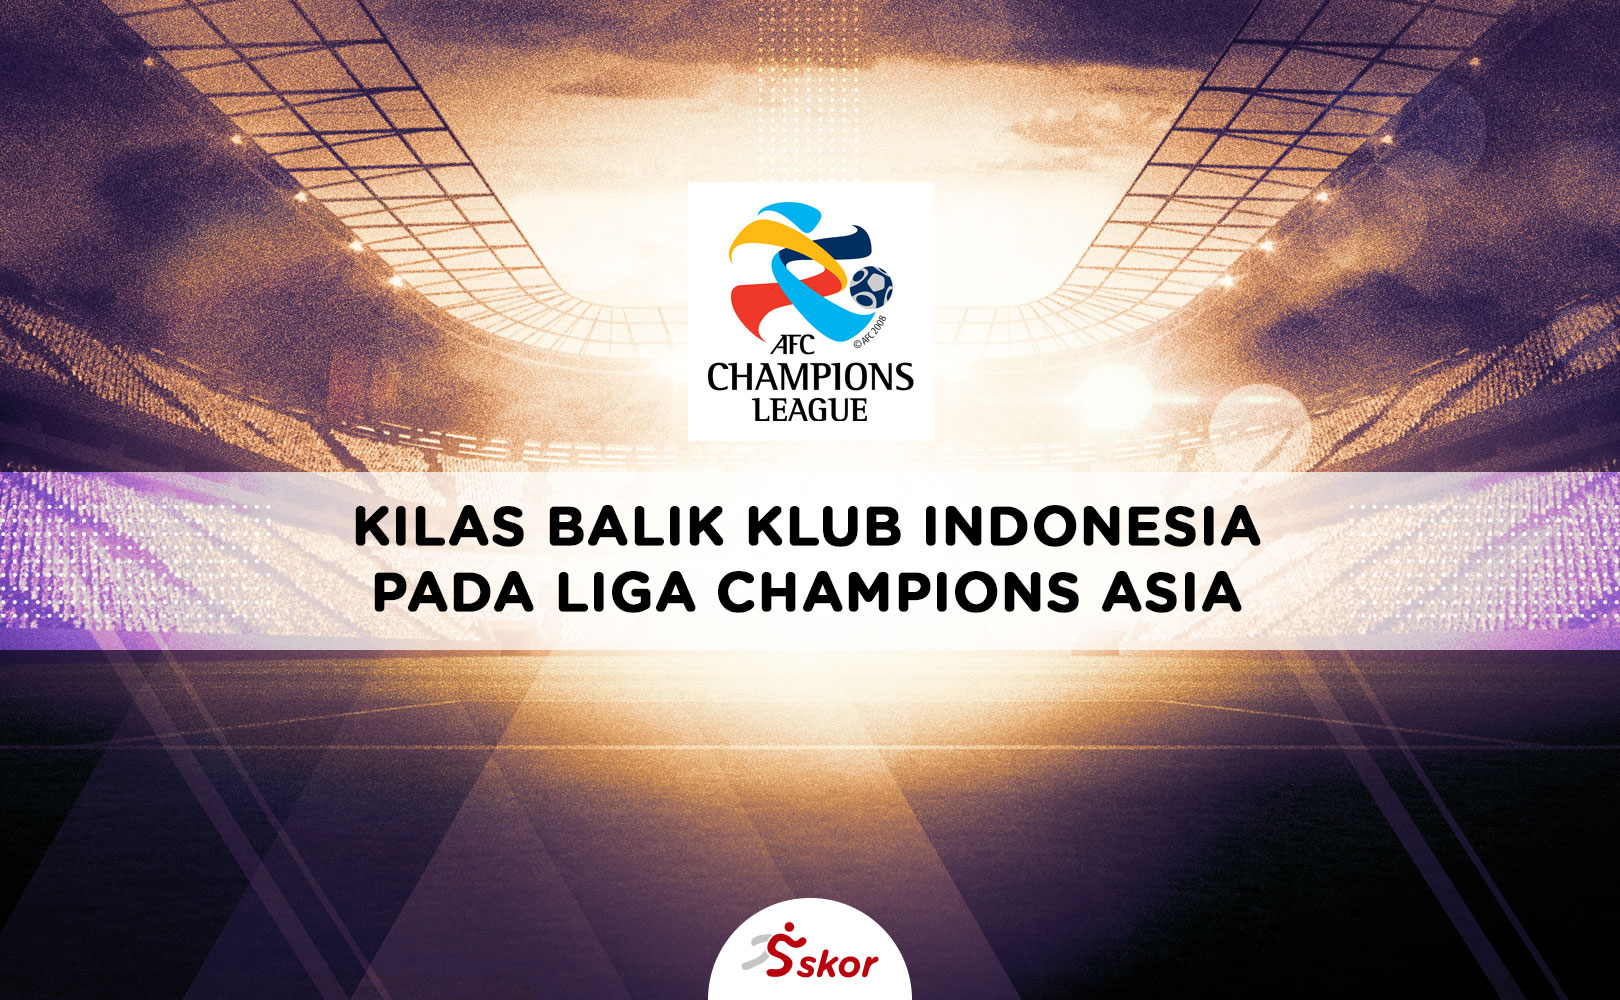 Kesalahan PSSI, Wakil Indonesia Pernah Didiskualifikasi dari Liga Champions Asia